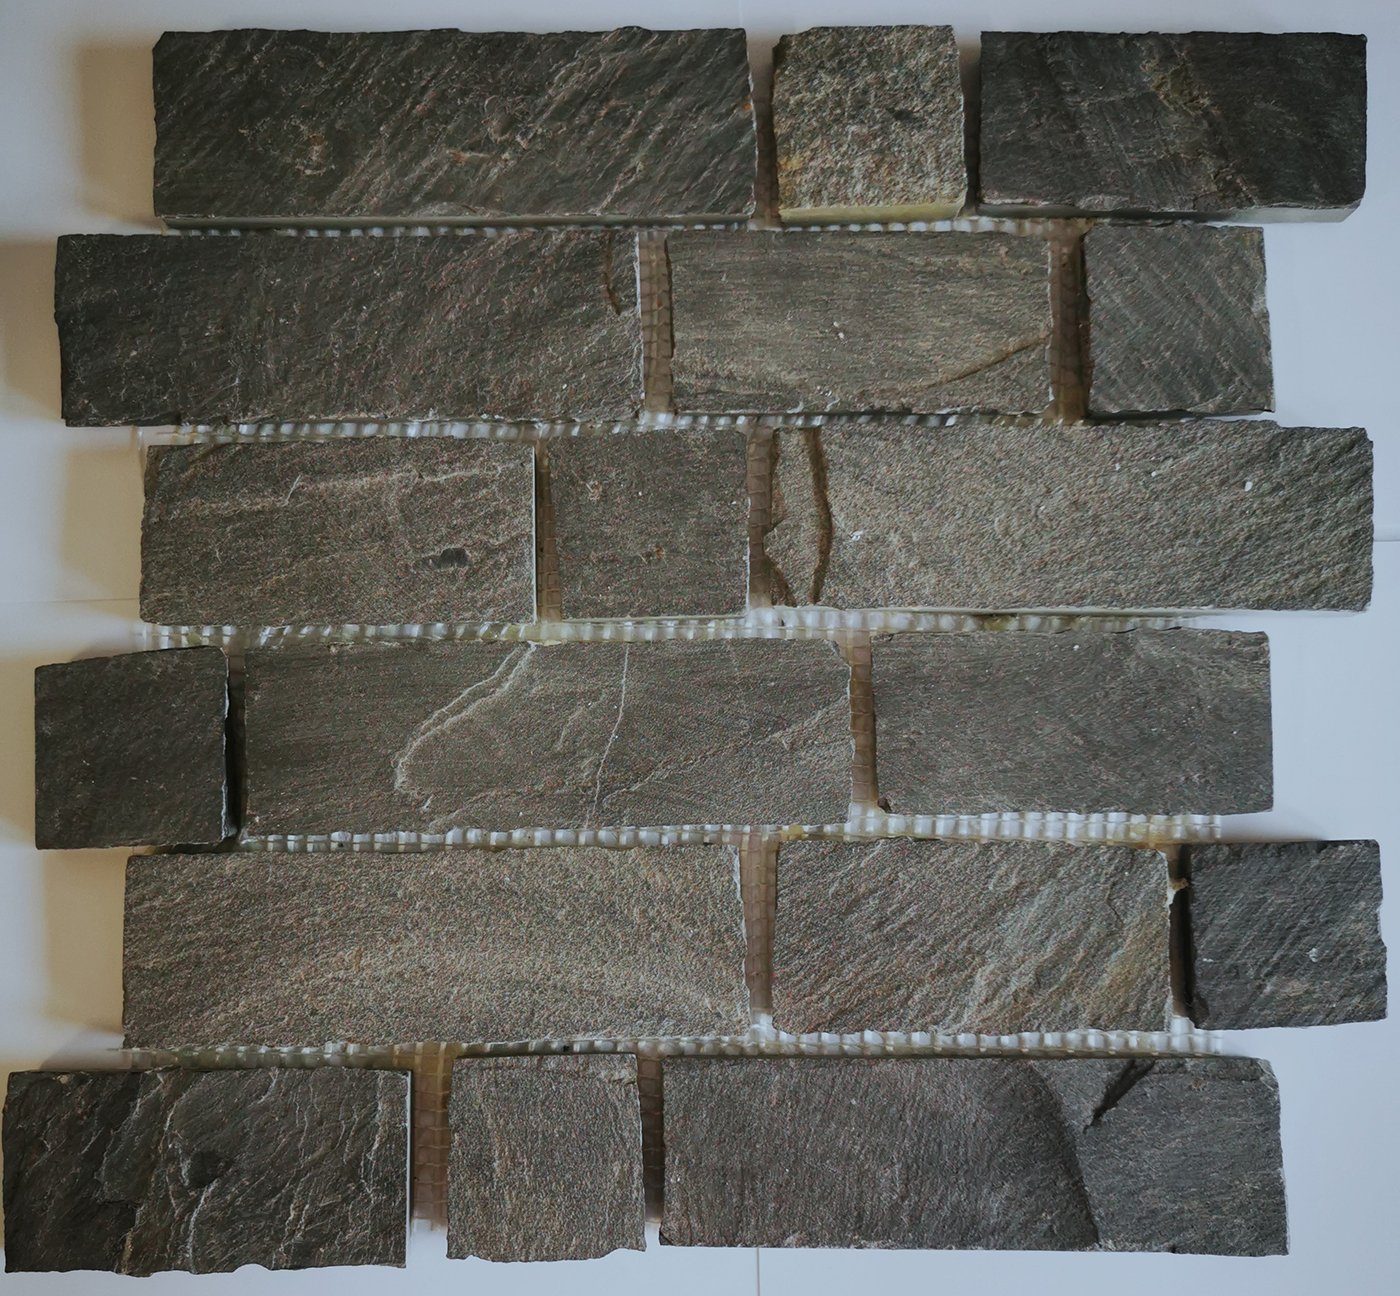 Mosani Mosaikfliesen Schiefer Mosaik Fliese Naturstein Brick anthrazit Black Jack Küche